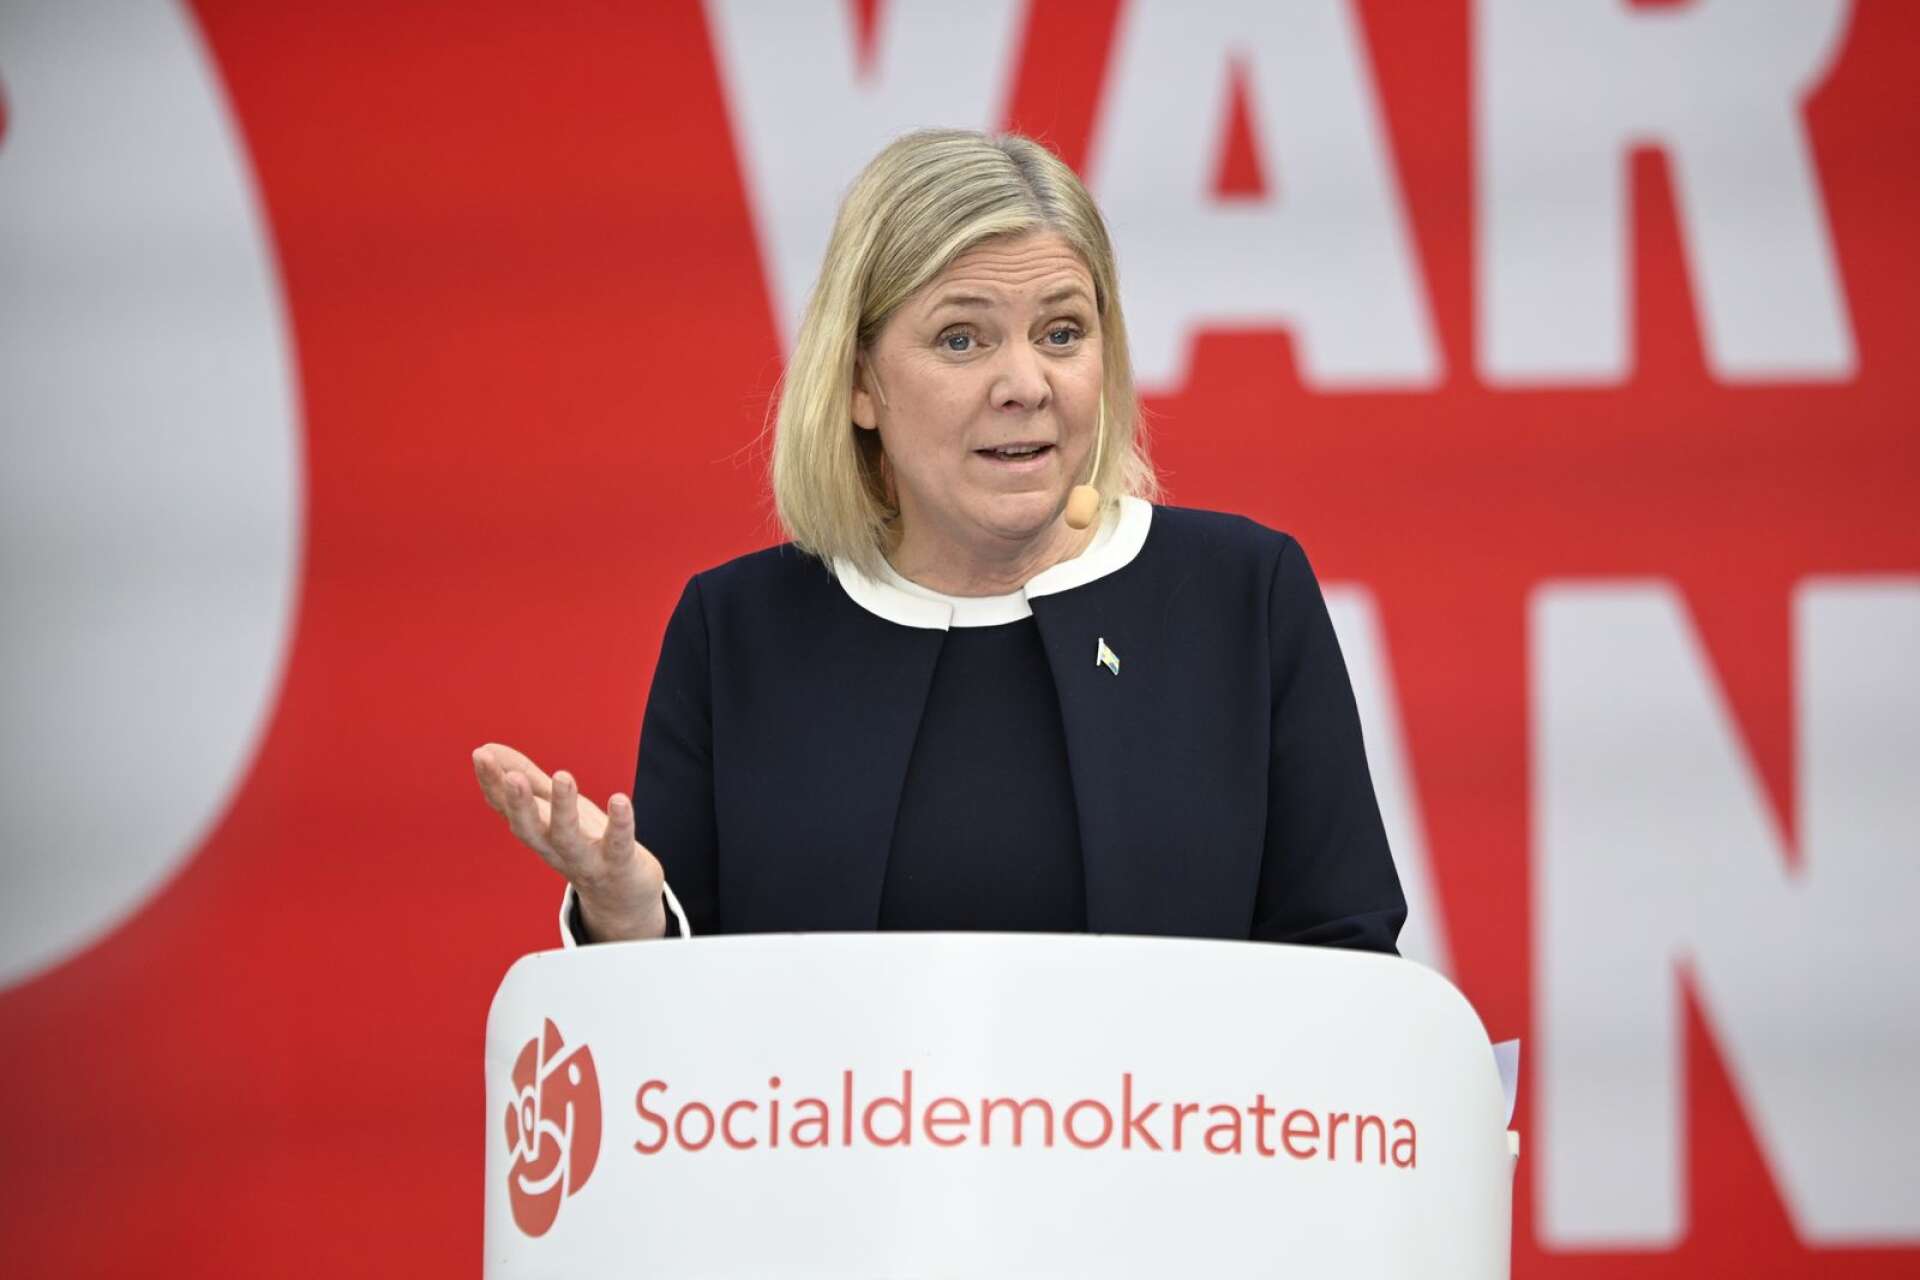 Högt spel när Magdalena Andersson kallar regeringen för en högerregimen som hotar grunderna i vår demokrati.